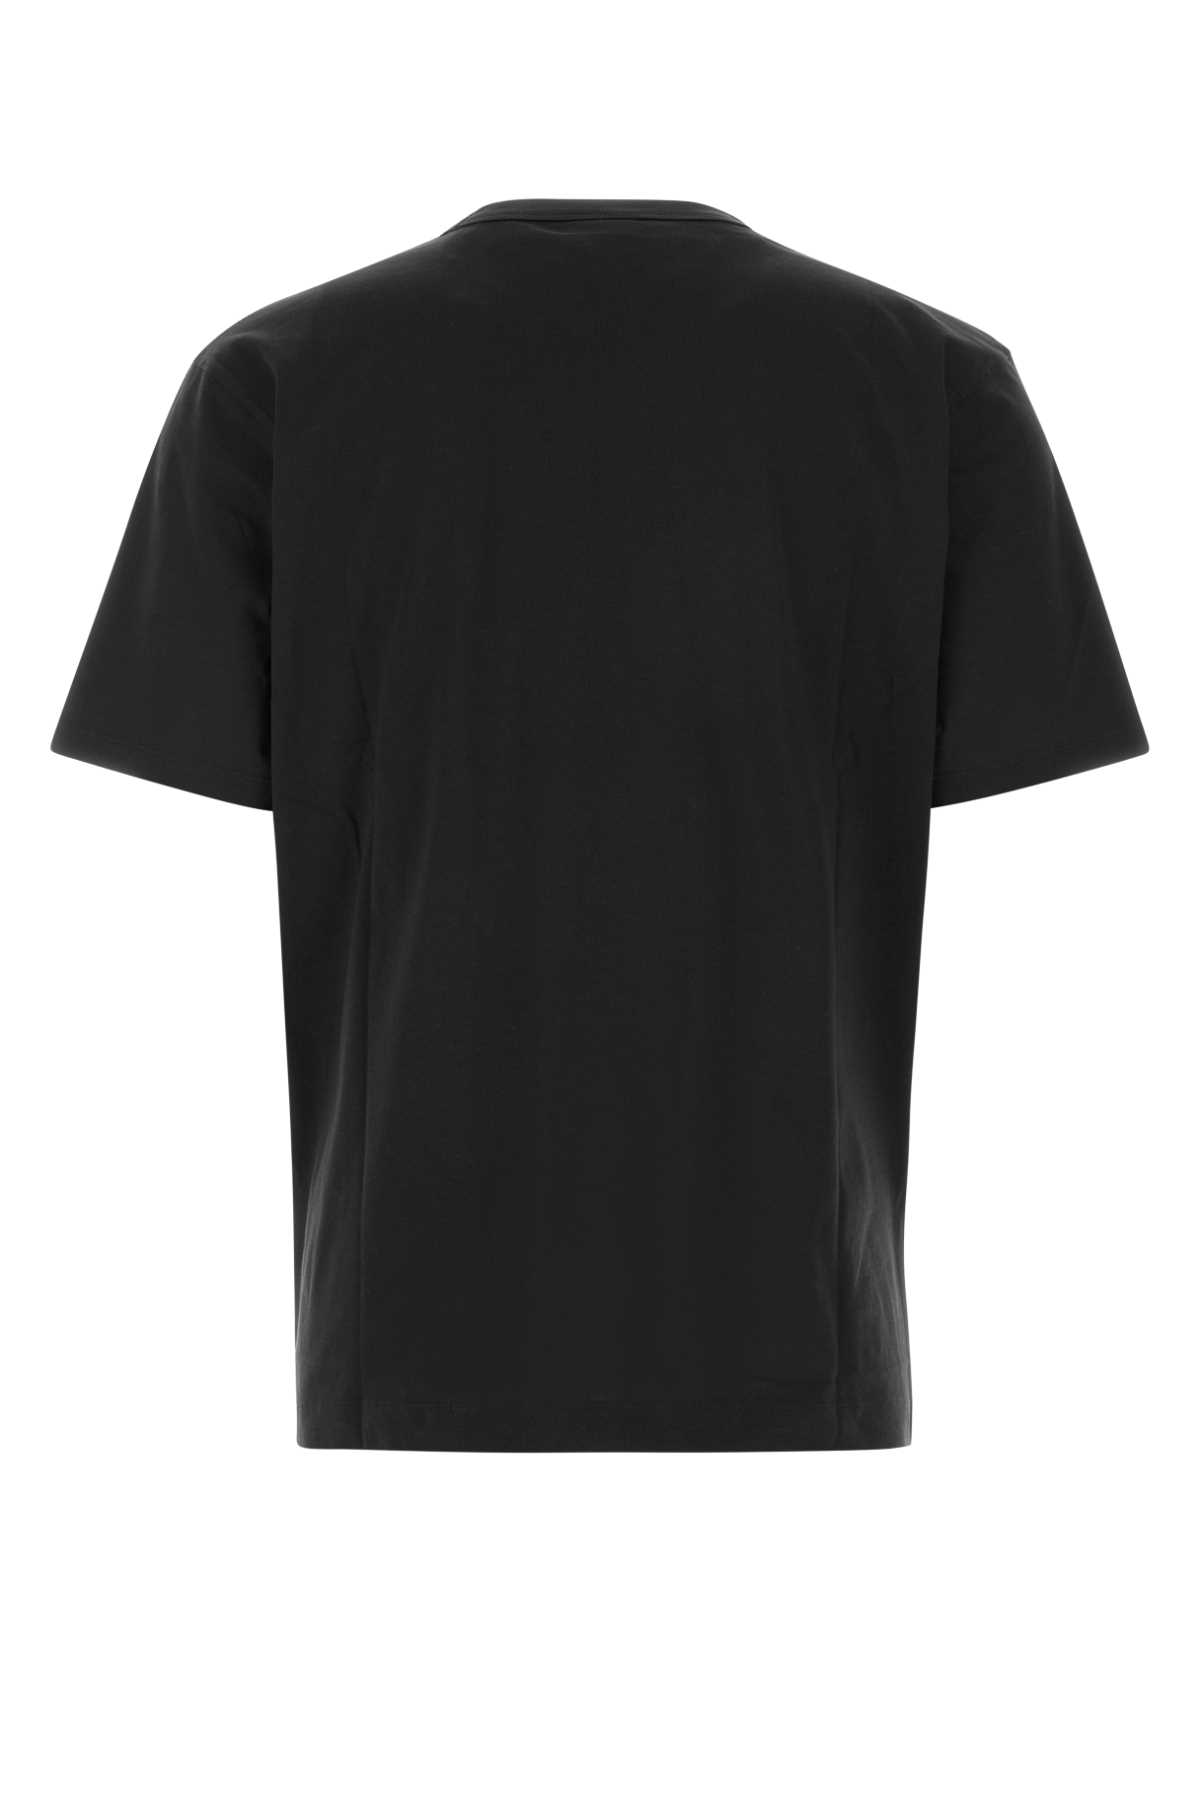 Shop Dries Van Noten Black Cotton Heer T-shirt